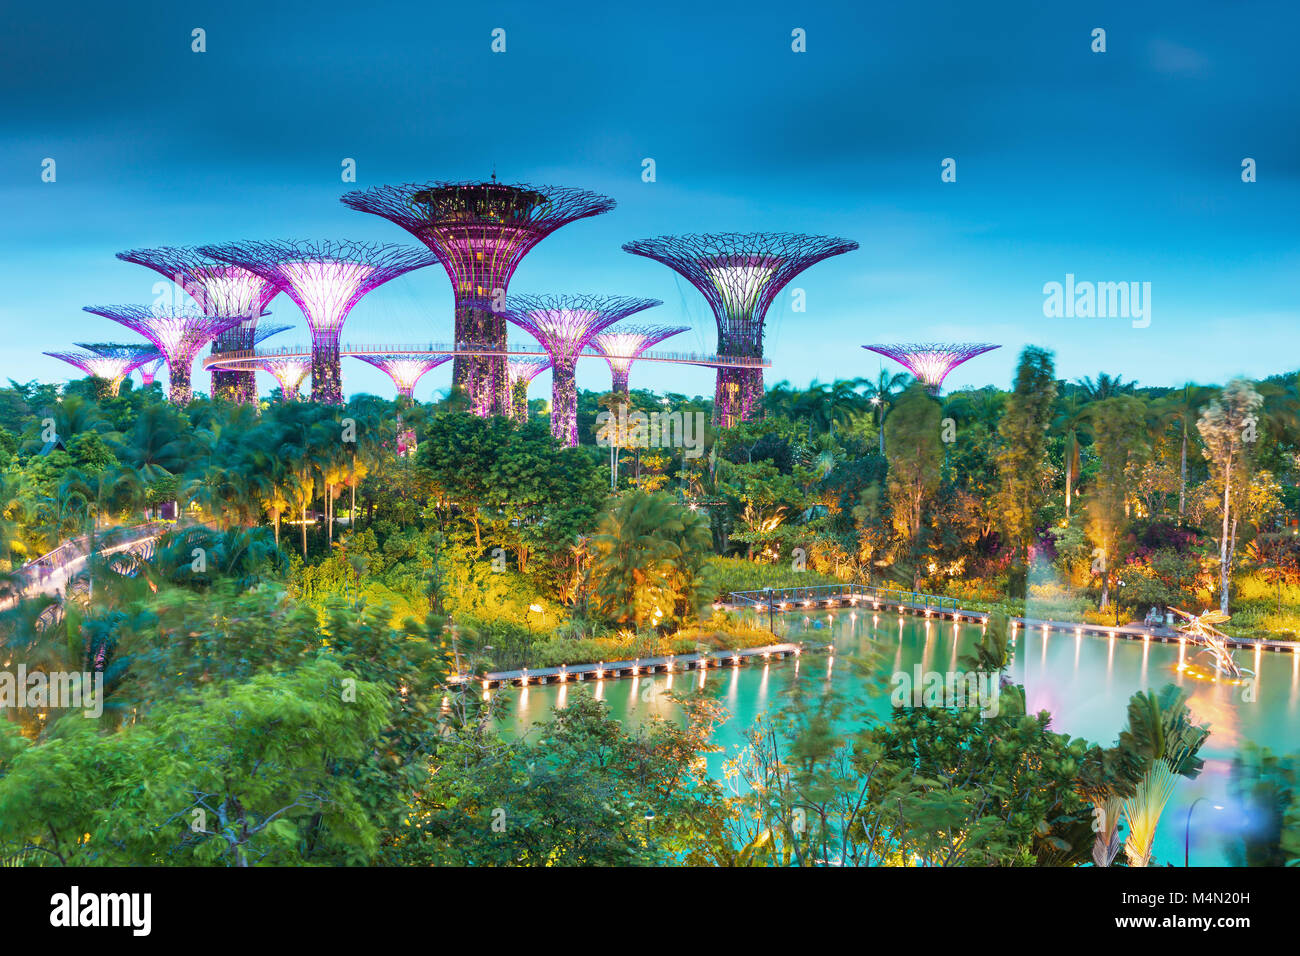 À Supertrees jardins au bord de la baie. Les arborescences sont équipés de technologies environnementales,Singapour Banque D'Images